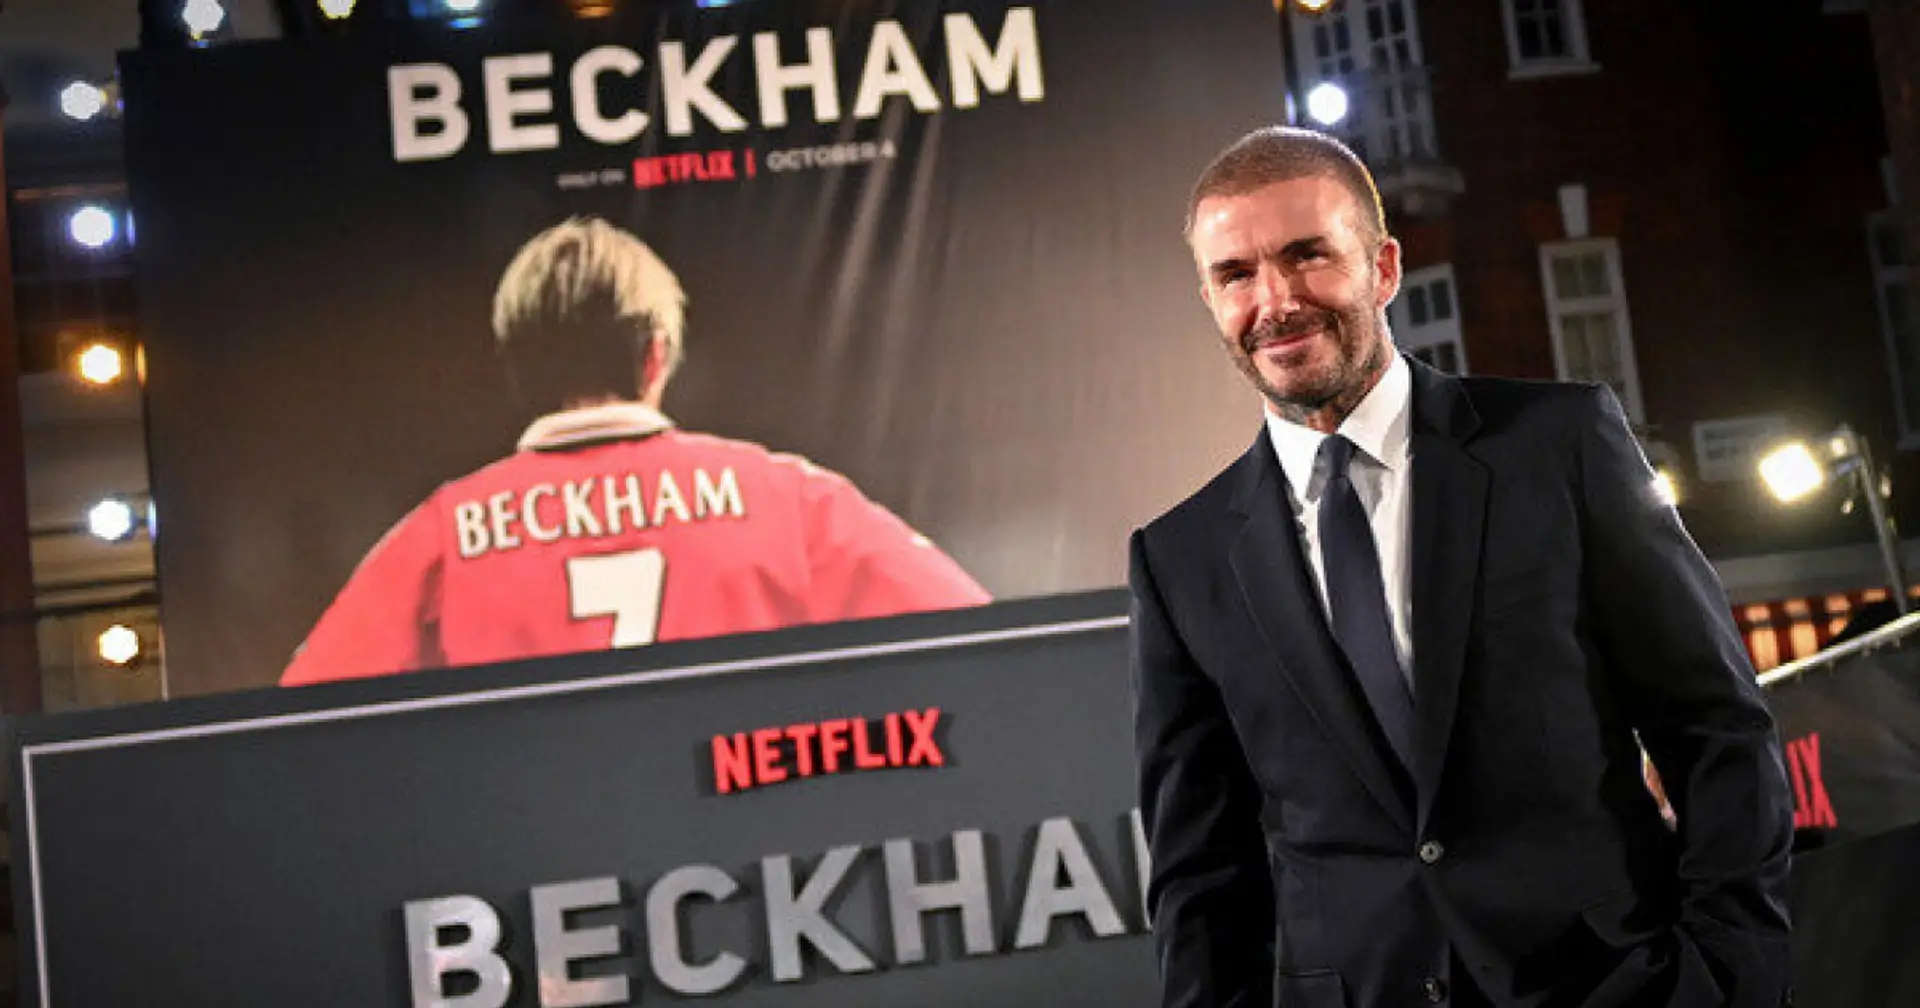 Beckham-Serie ist großartig: Der Ruhm, der Glamour, die Beziehung zu Victoria, der Konflikt mit Sir Alex Ferguson